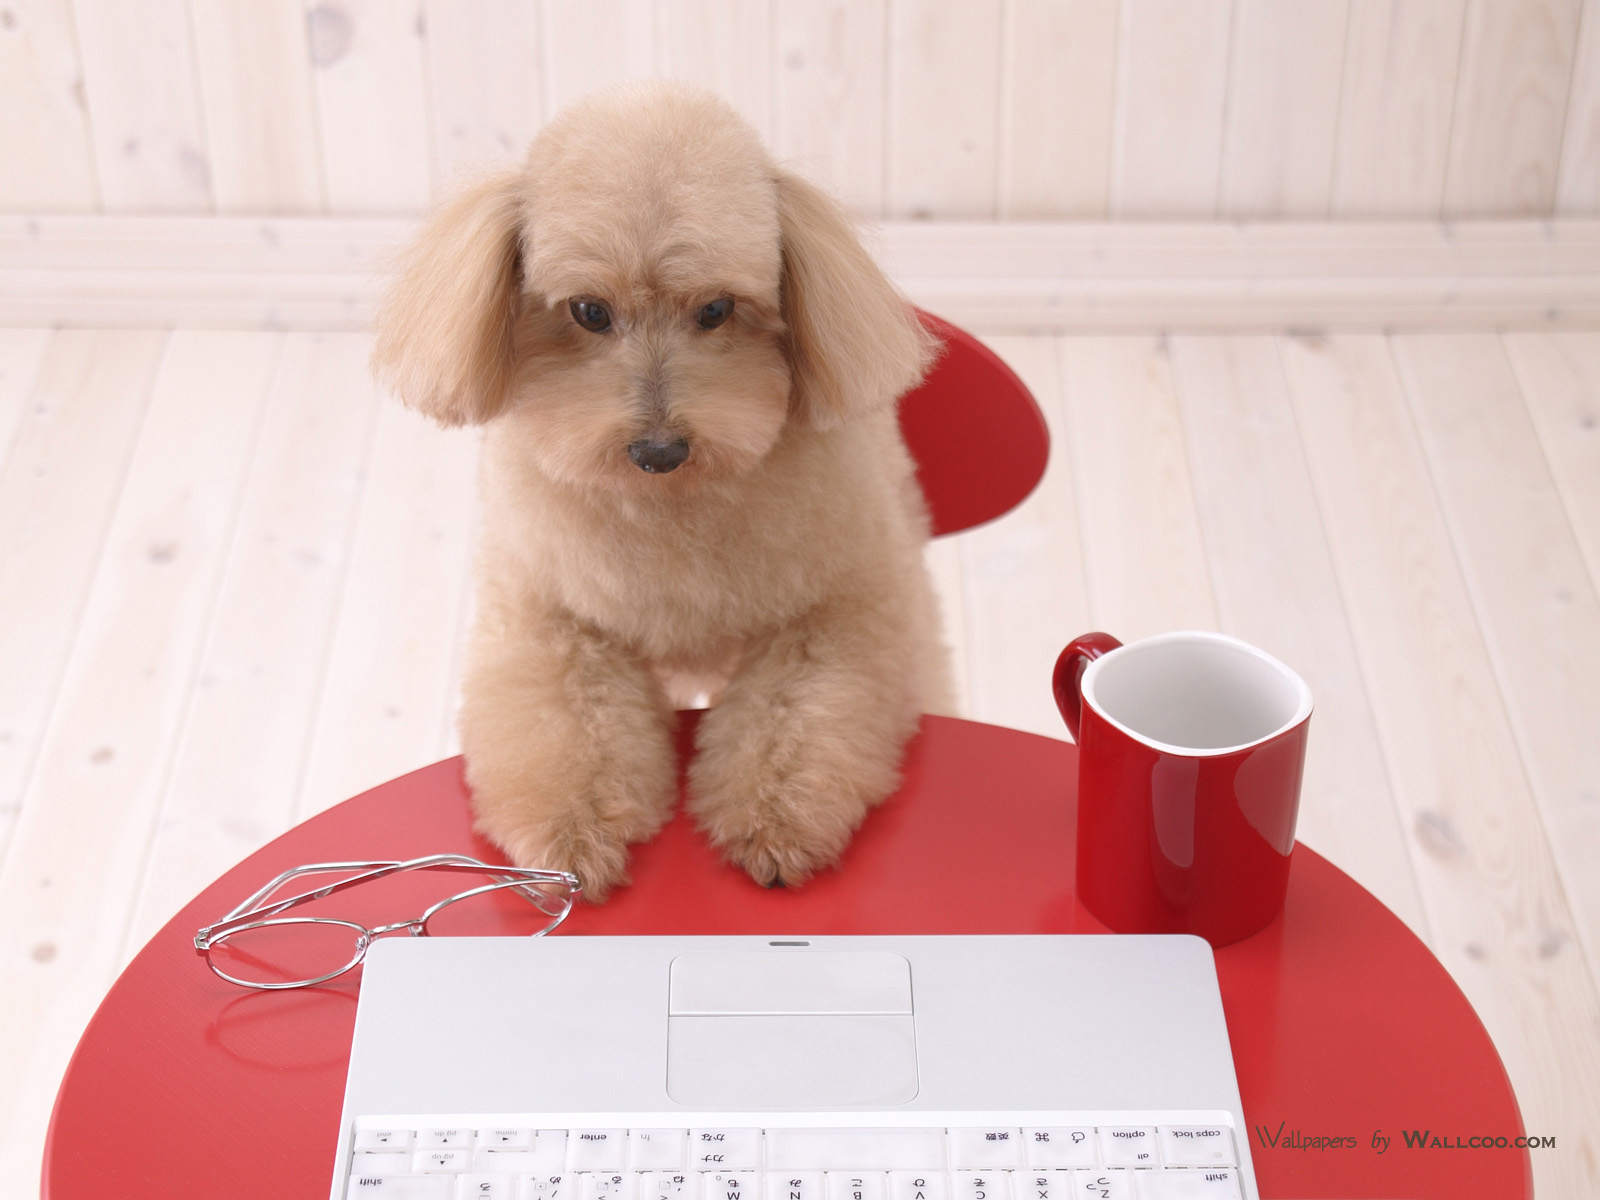 壁纸1440×900宠物狗狗上网图片 Pet Dog lovely Puppy Desktop壁纸,家居宠物狗狗壁纸壁纸图片-动物壁纸-动物 ...